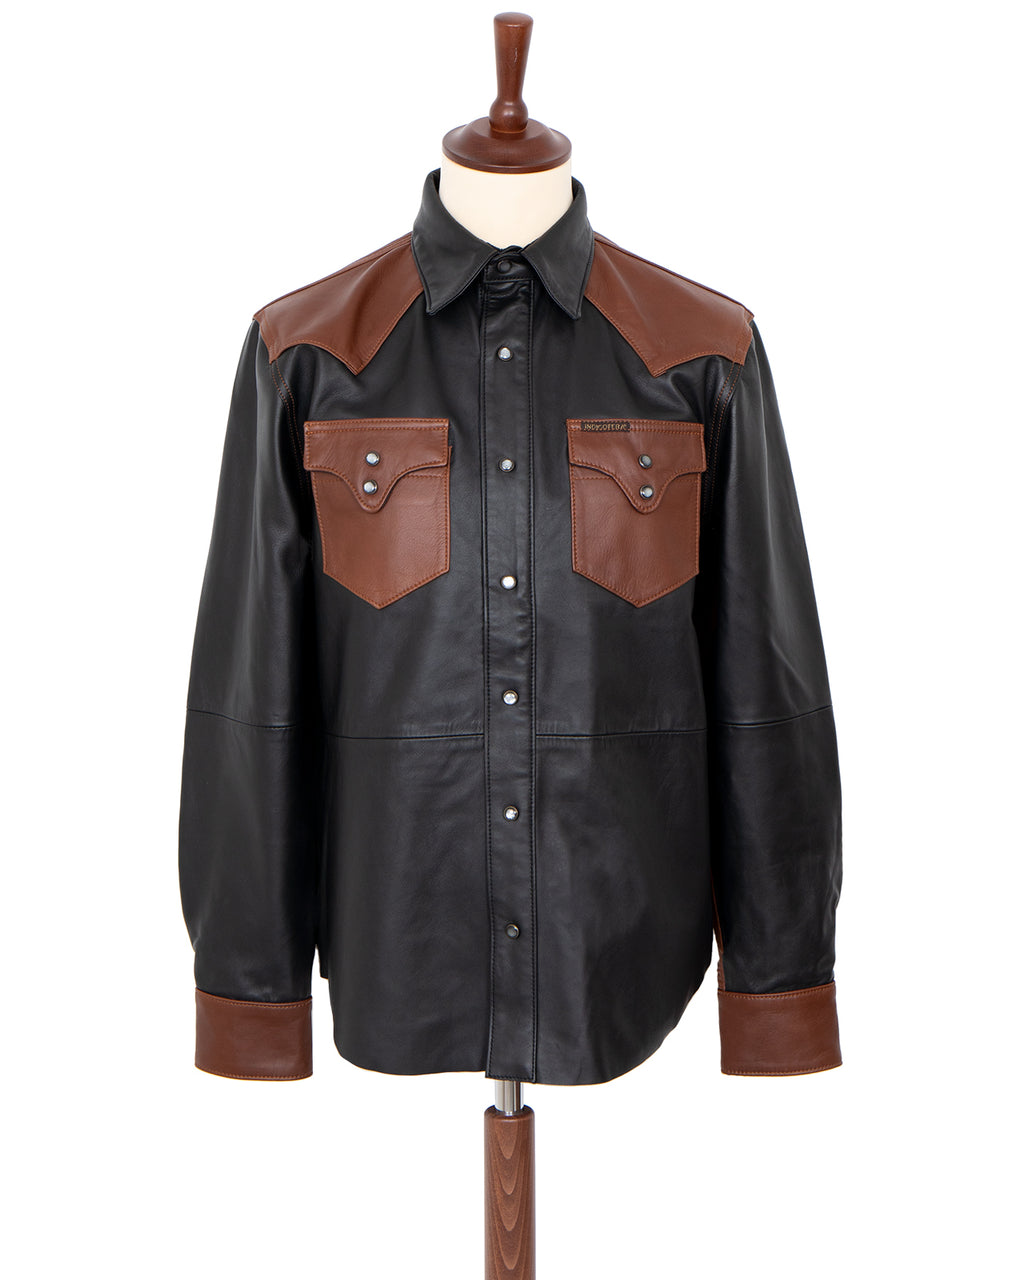 Indigofera Hawley Leather Shirt, Black / Brown